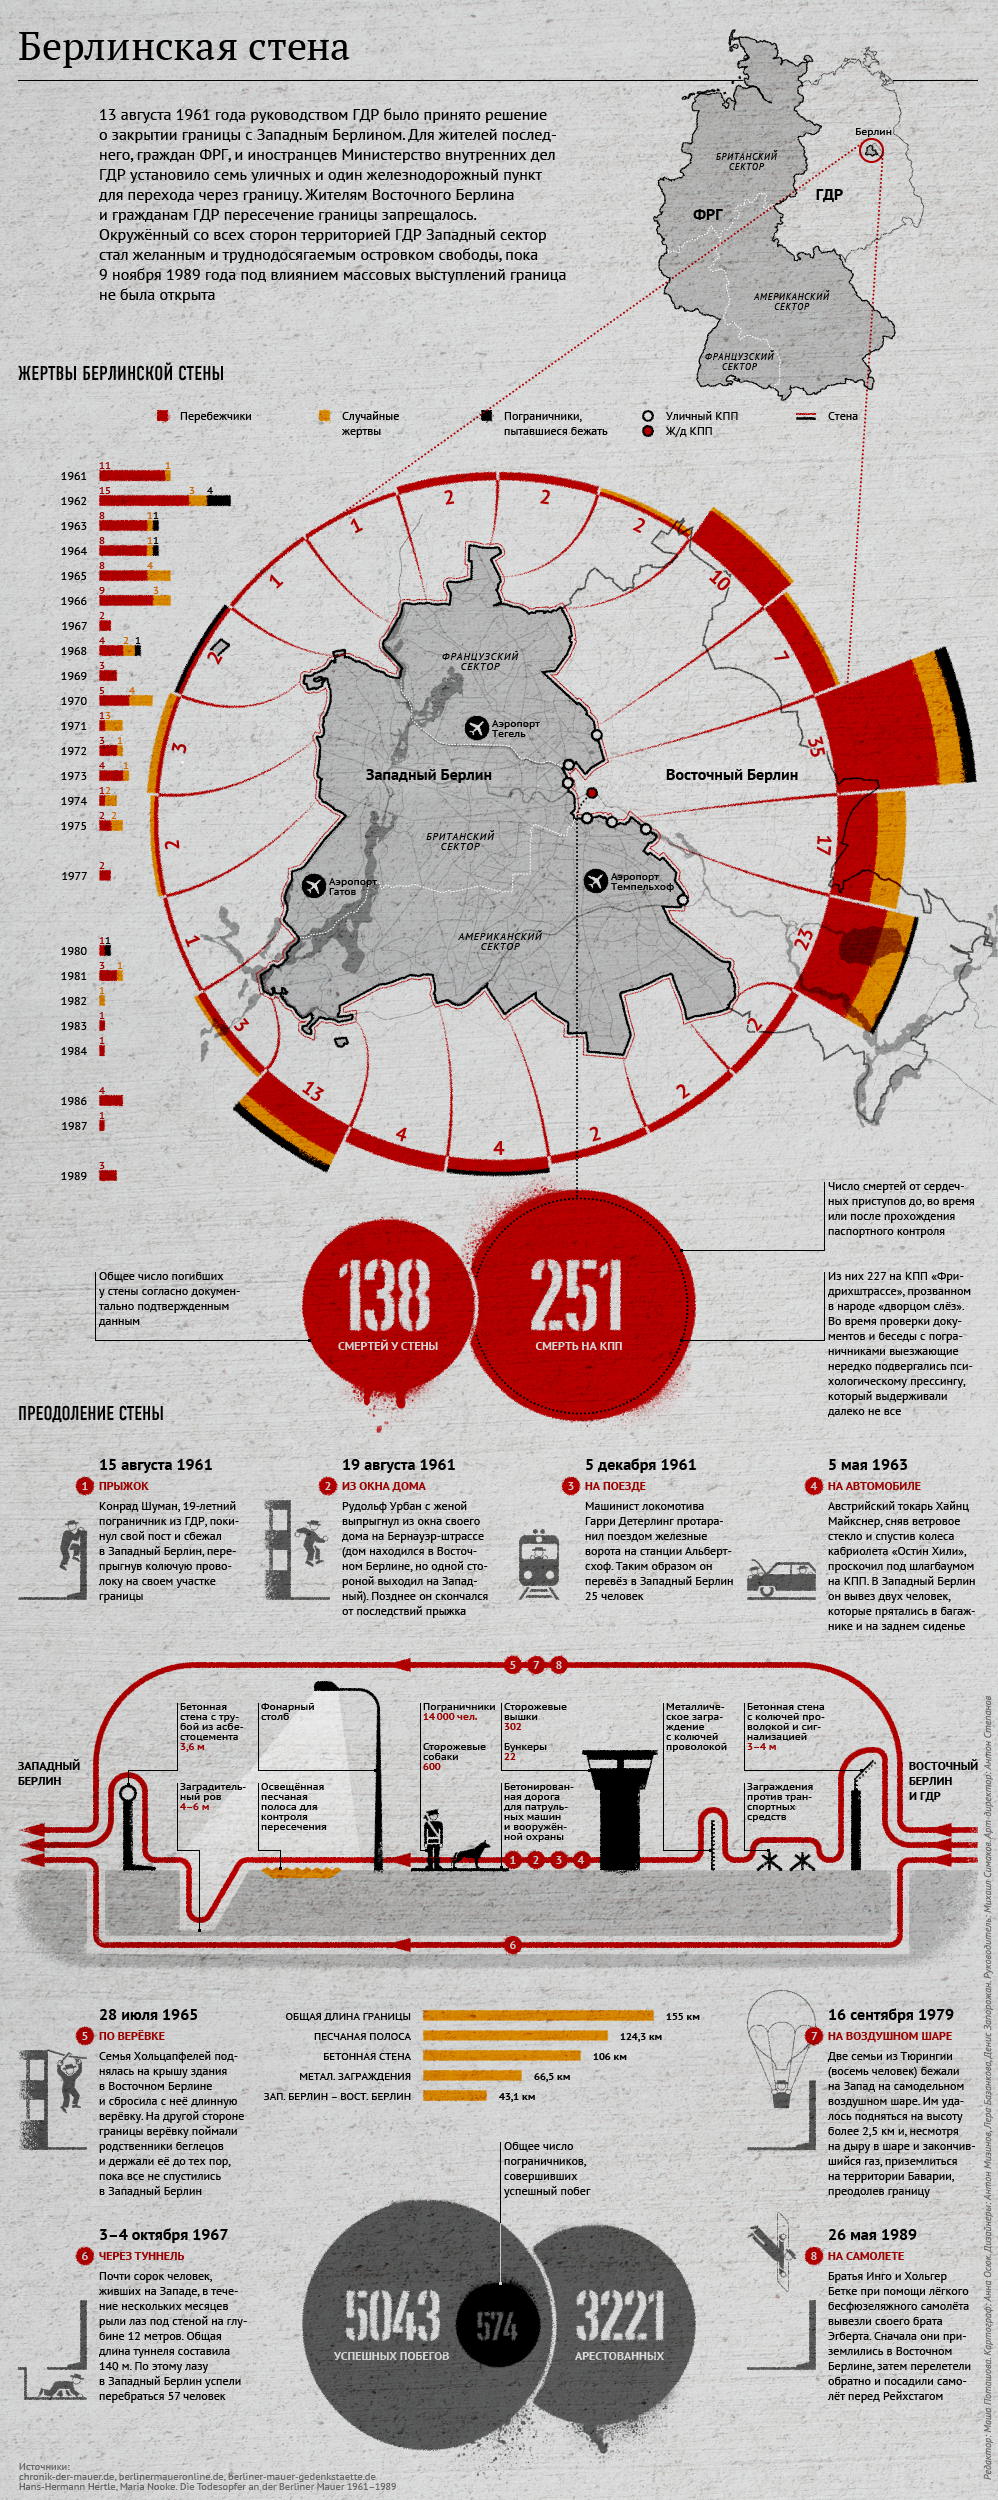 infographics berlin wall Cold War